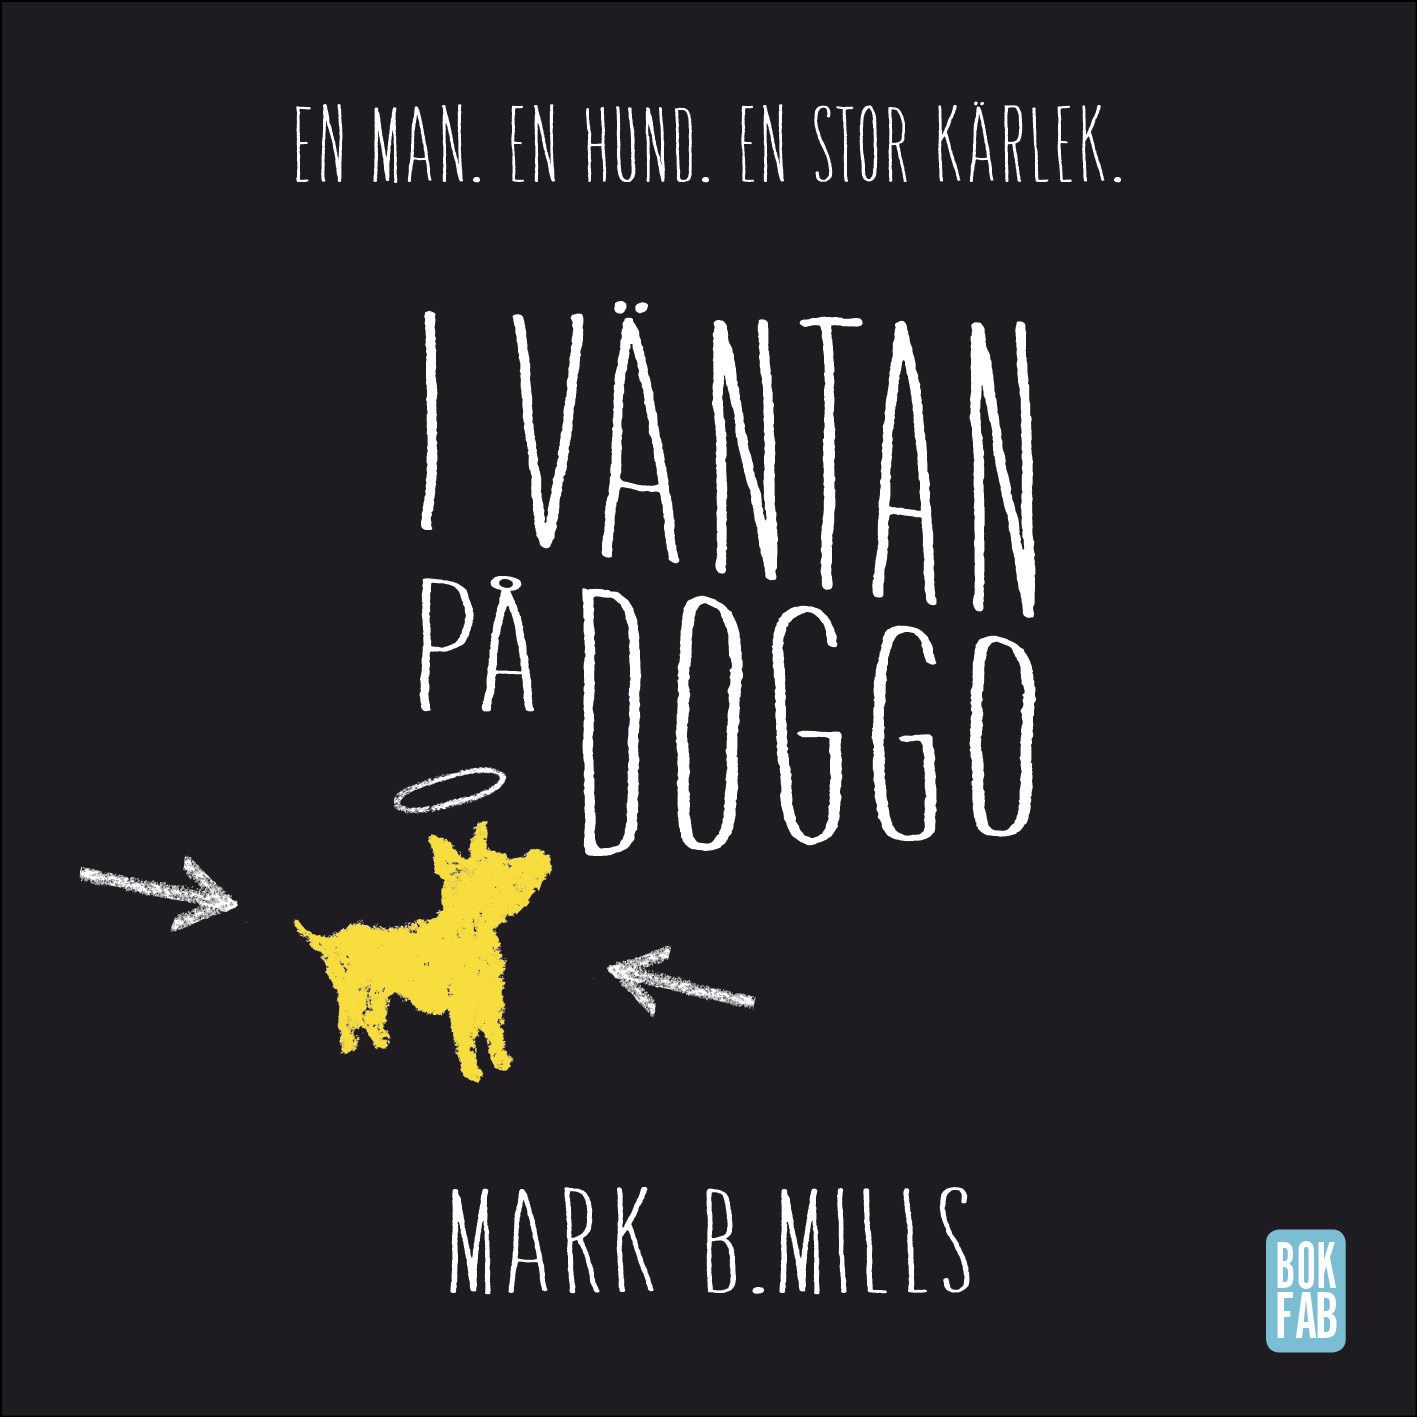 I väntan på Doggo, ljudbok av Mark B. Mills